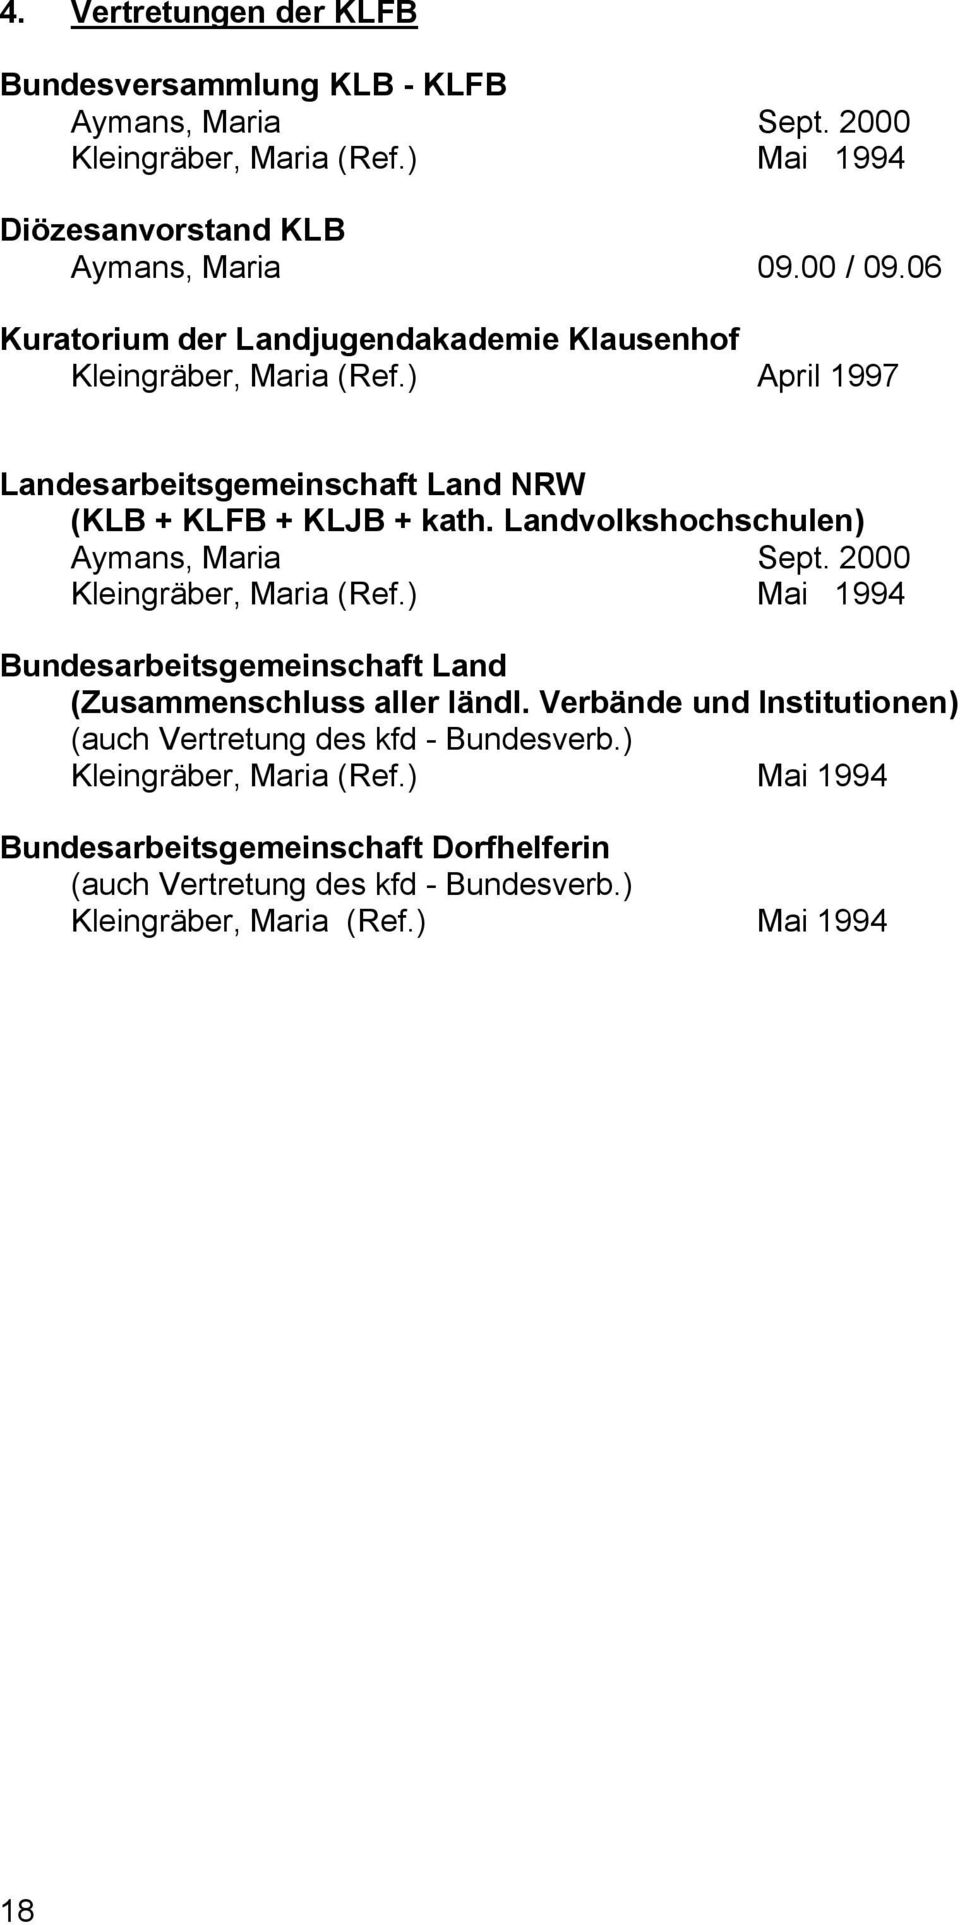 Landvolkshochschulen) Aymans, Maria Sept. 2000 Kleingräber, Maria (Ref.) Mai 1994 Bundesarbeitsgemeinschaft Land (Zusammenschluss aller ländl.